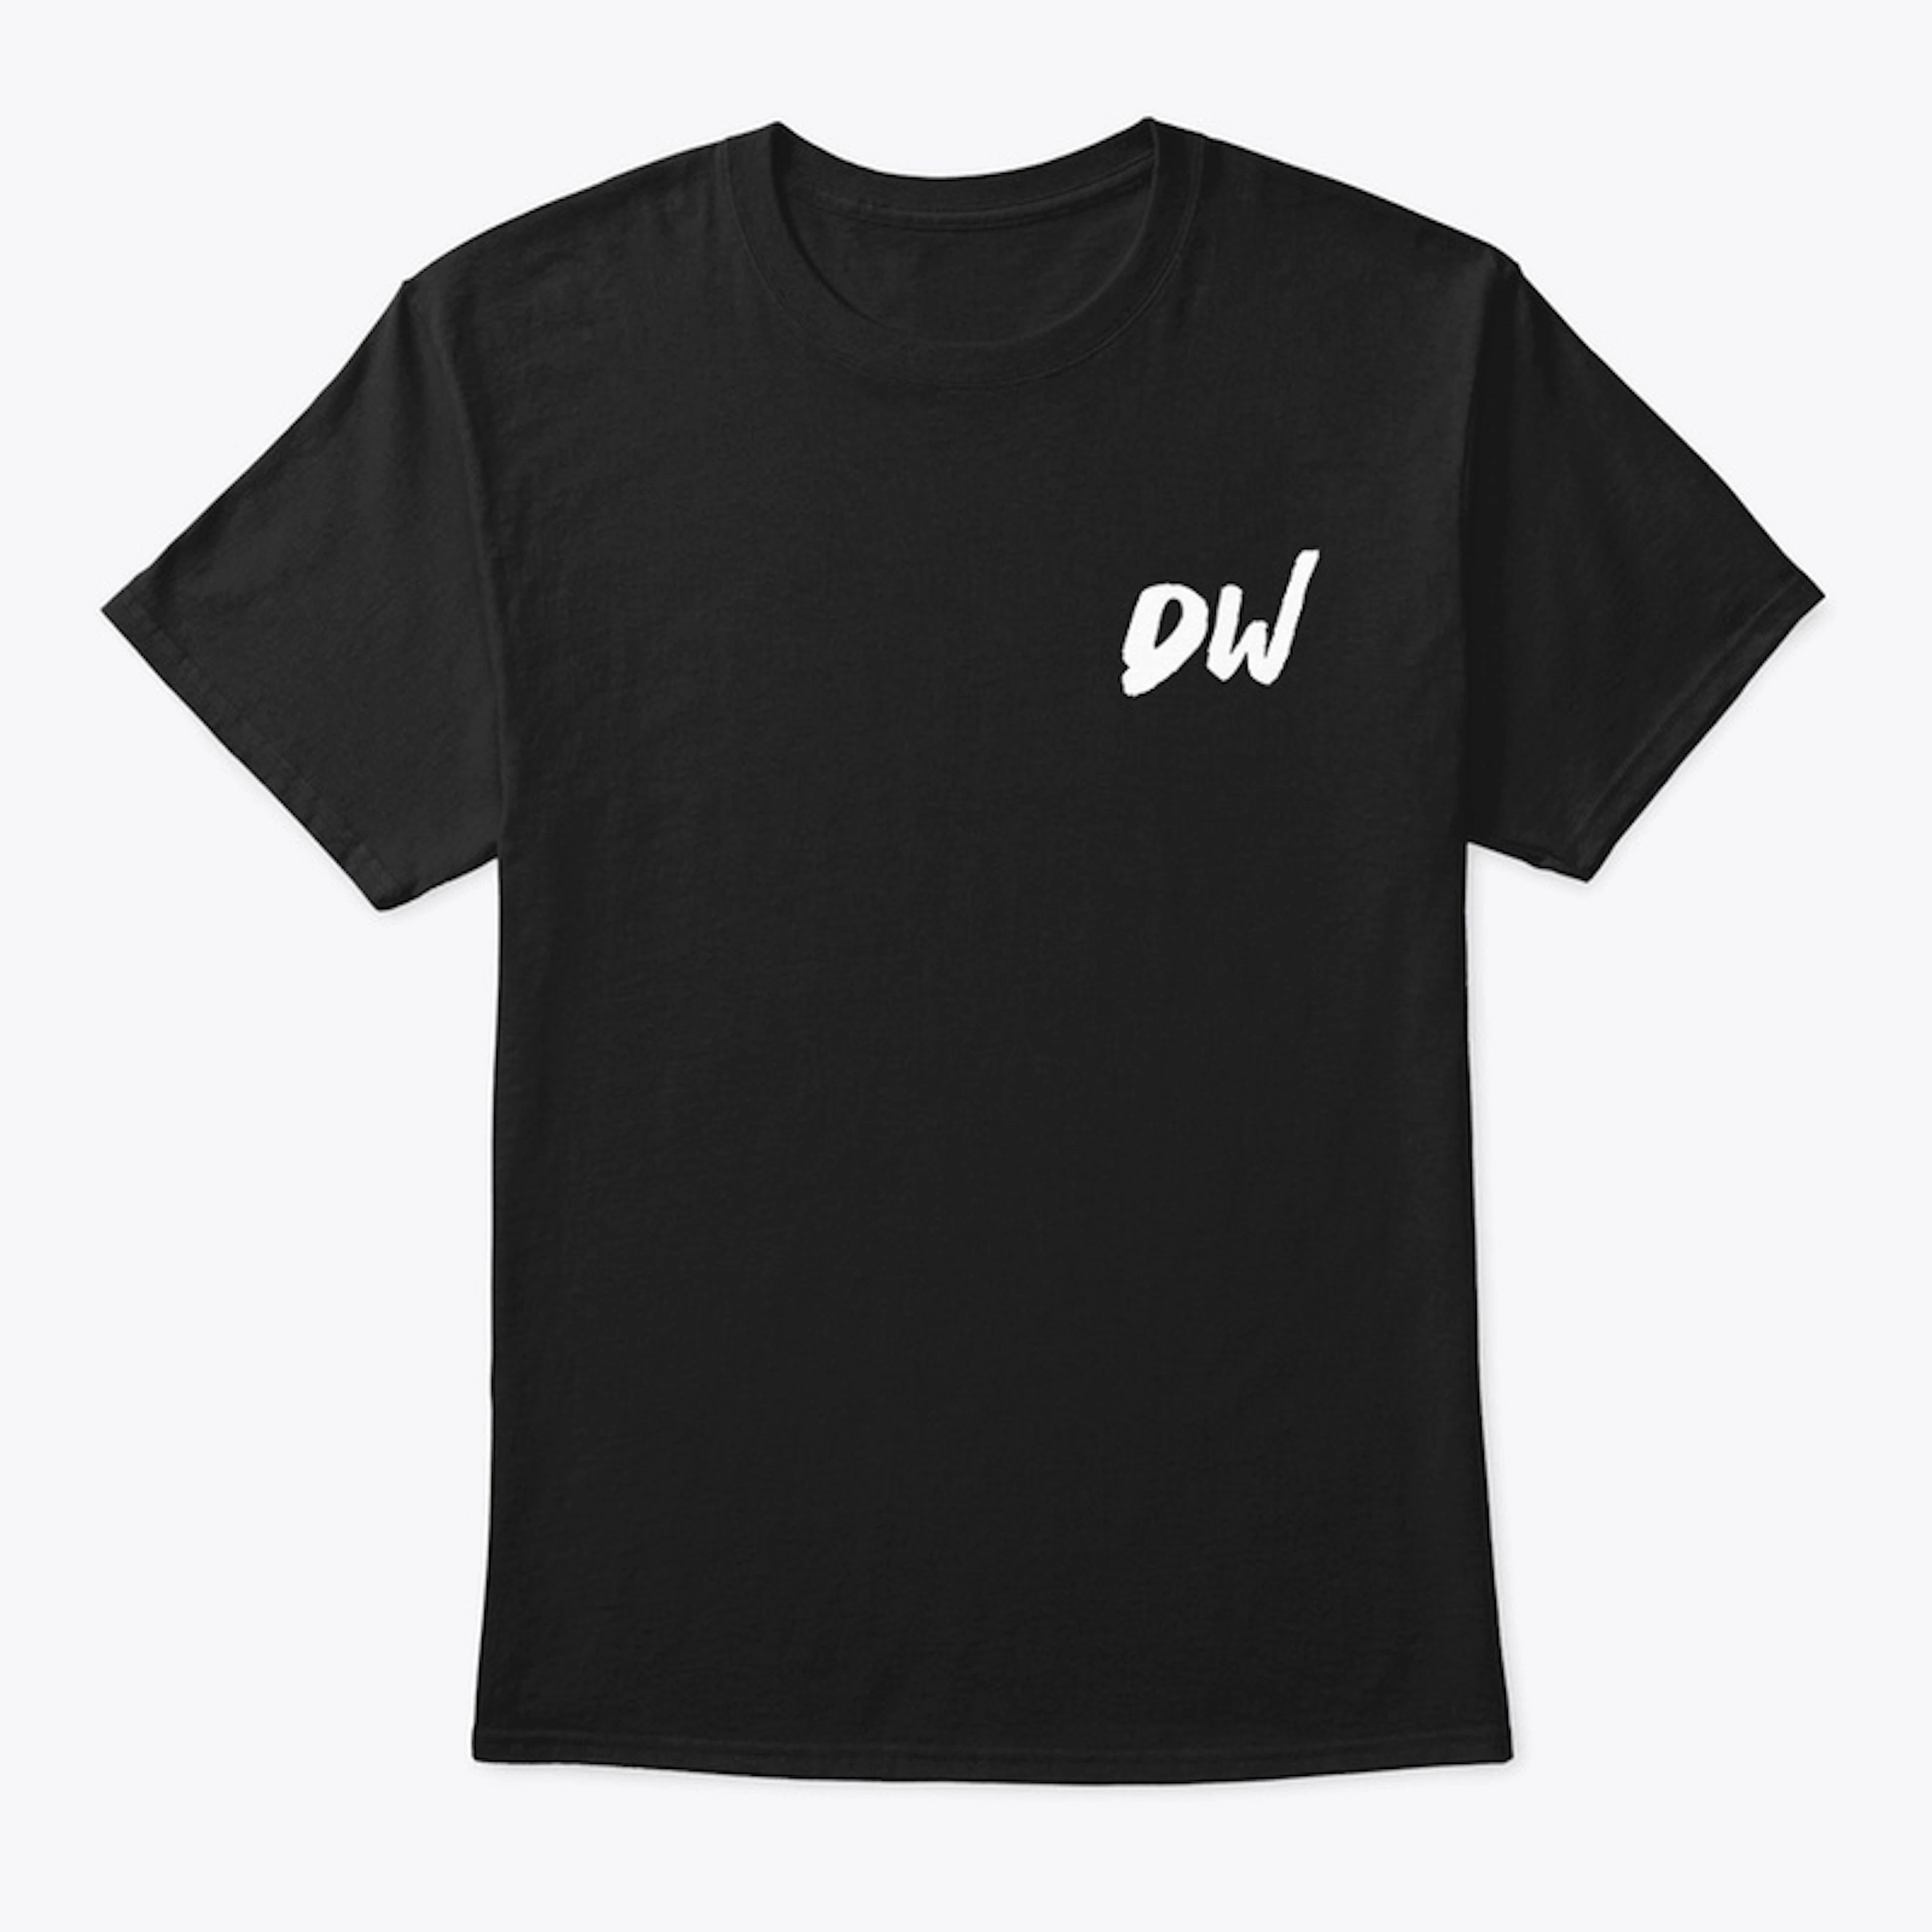 DukeWorld w/sign (Black w/White letters)